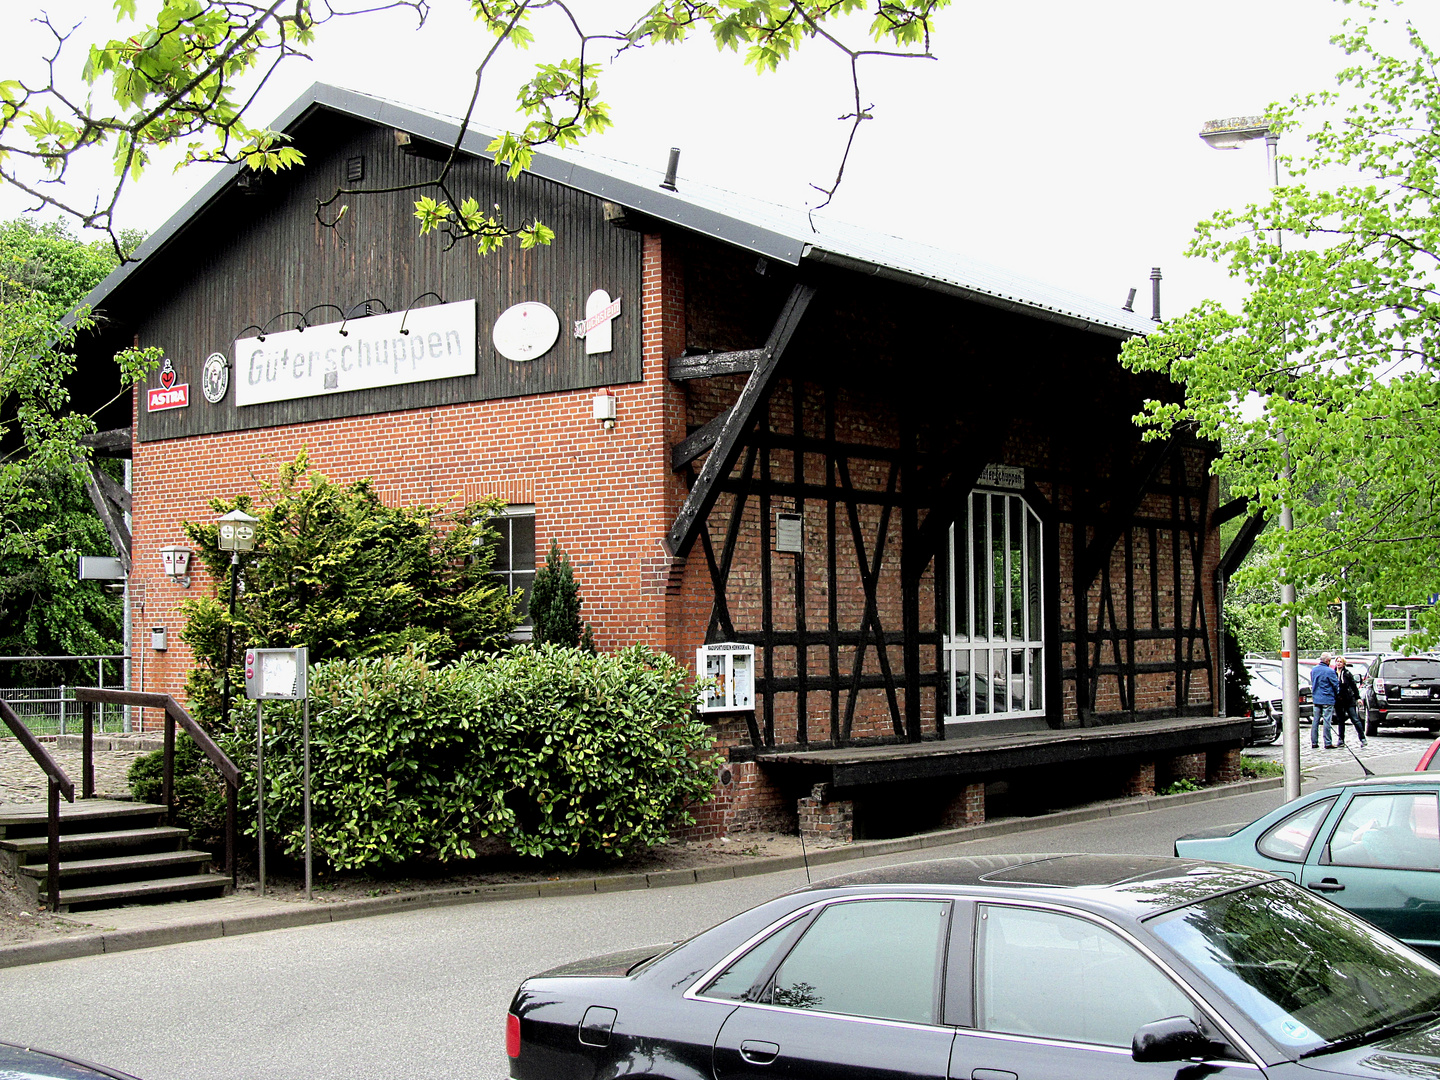 Der Güterschuppen in Hemmoor wird jetzt als Kneipen - Restaurant genutzt